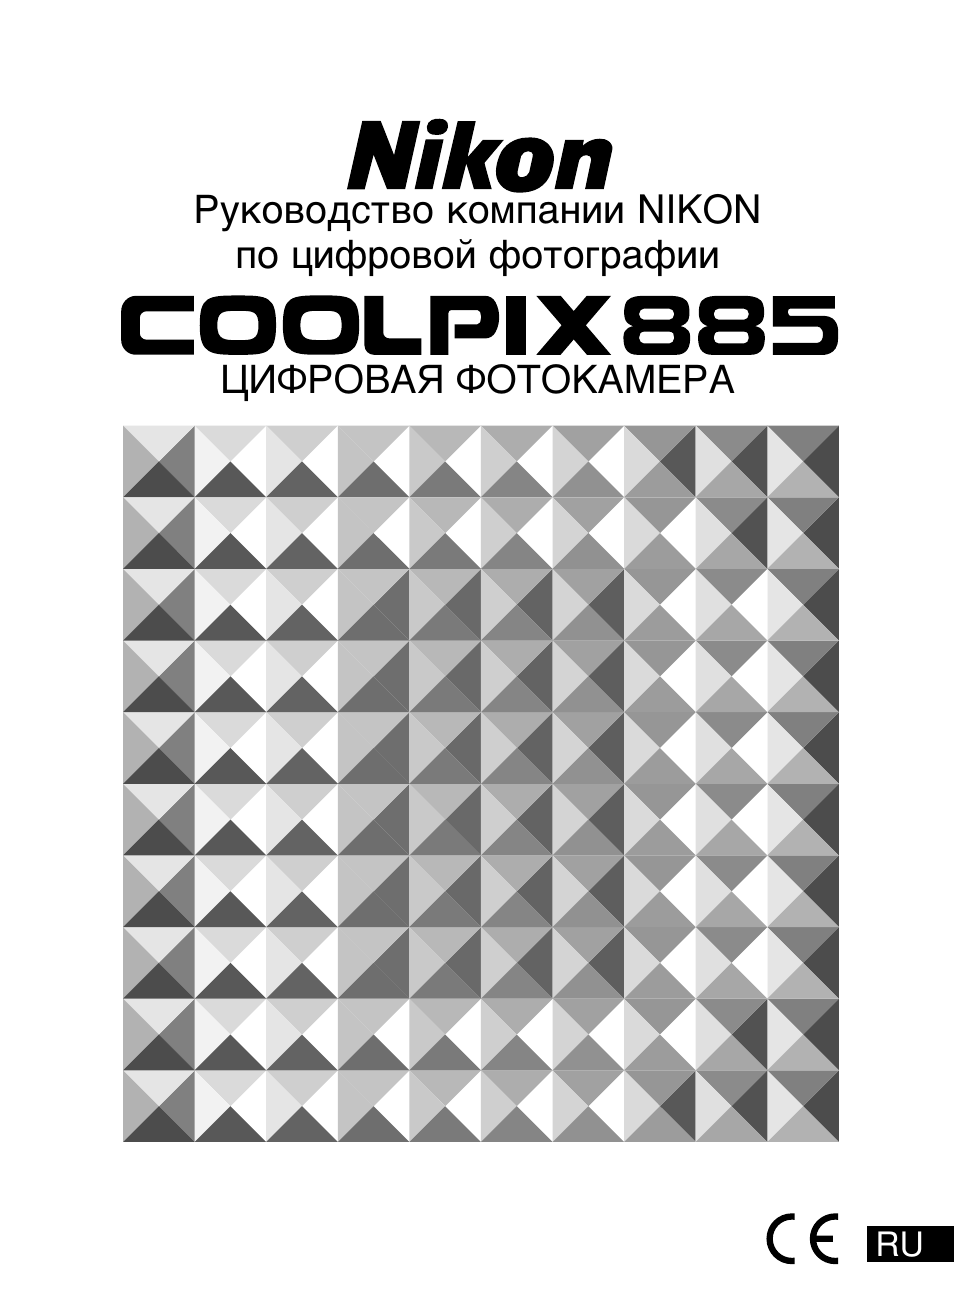 Инструкция по эксплуатации Nikon Coolpix 885 | 206 страниц